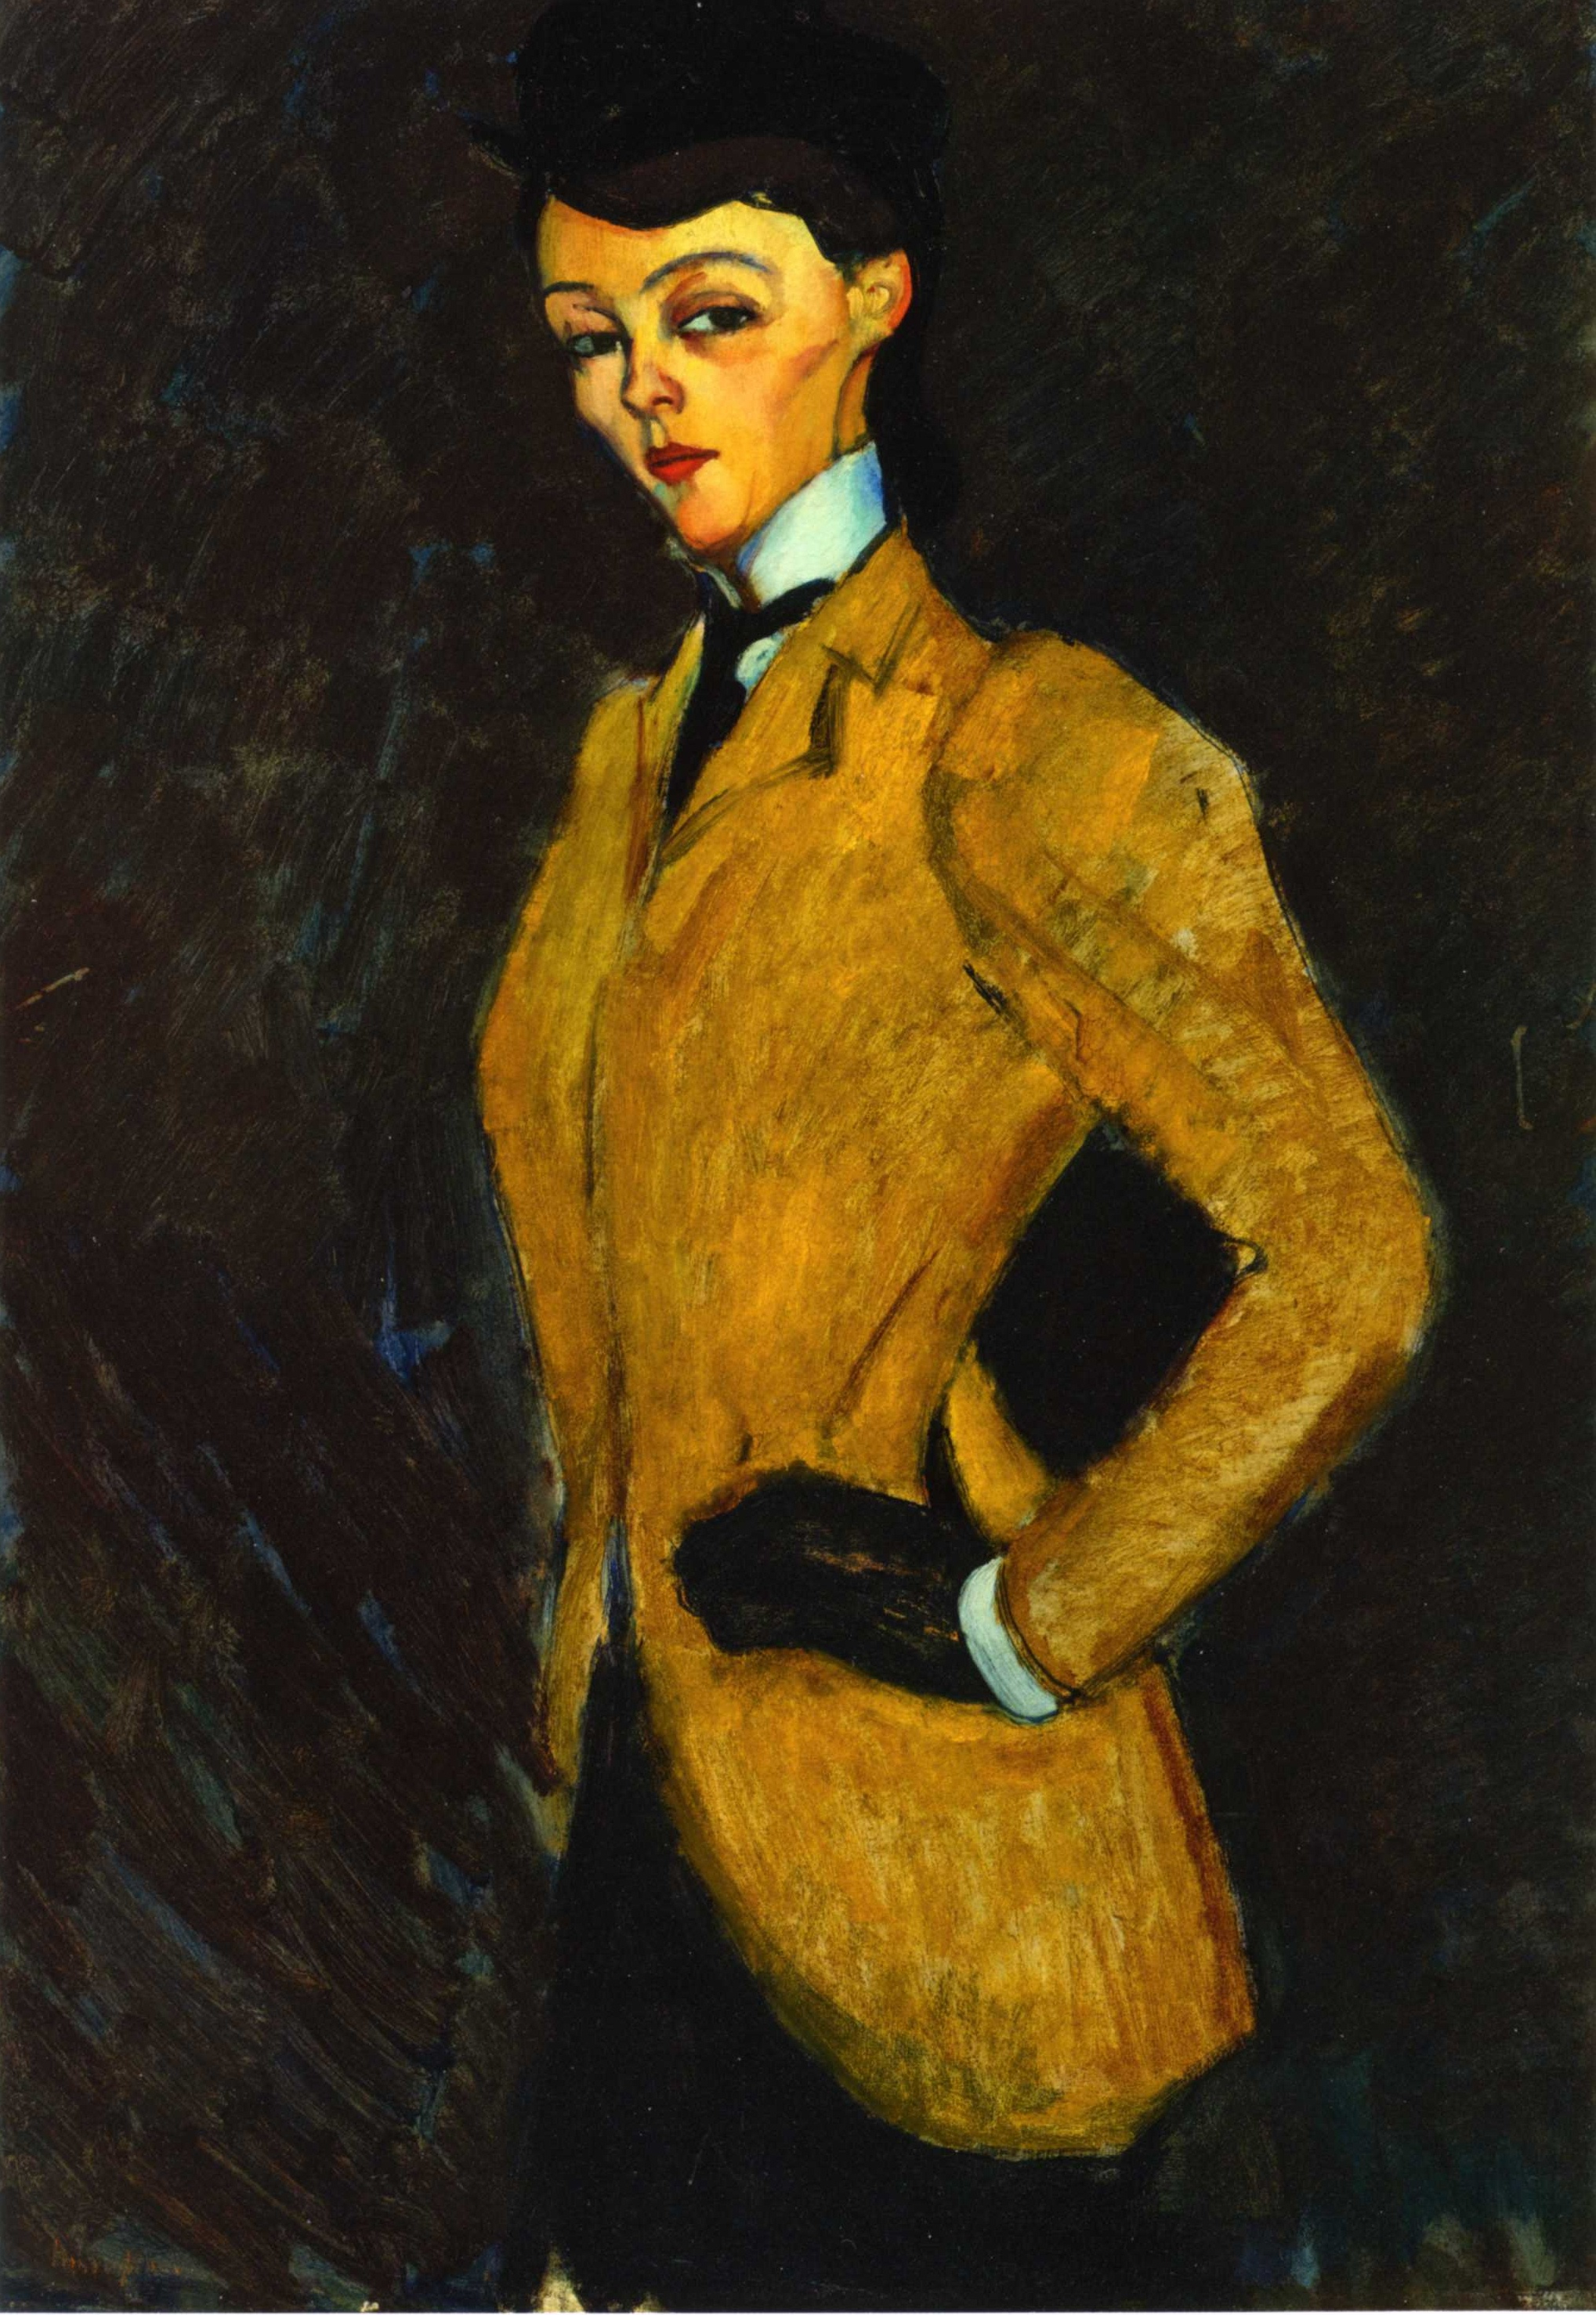 De Amazone by Amedeo Modigliani - 1909 - 92 x 65.6 cm 